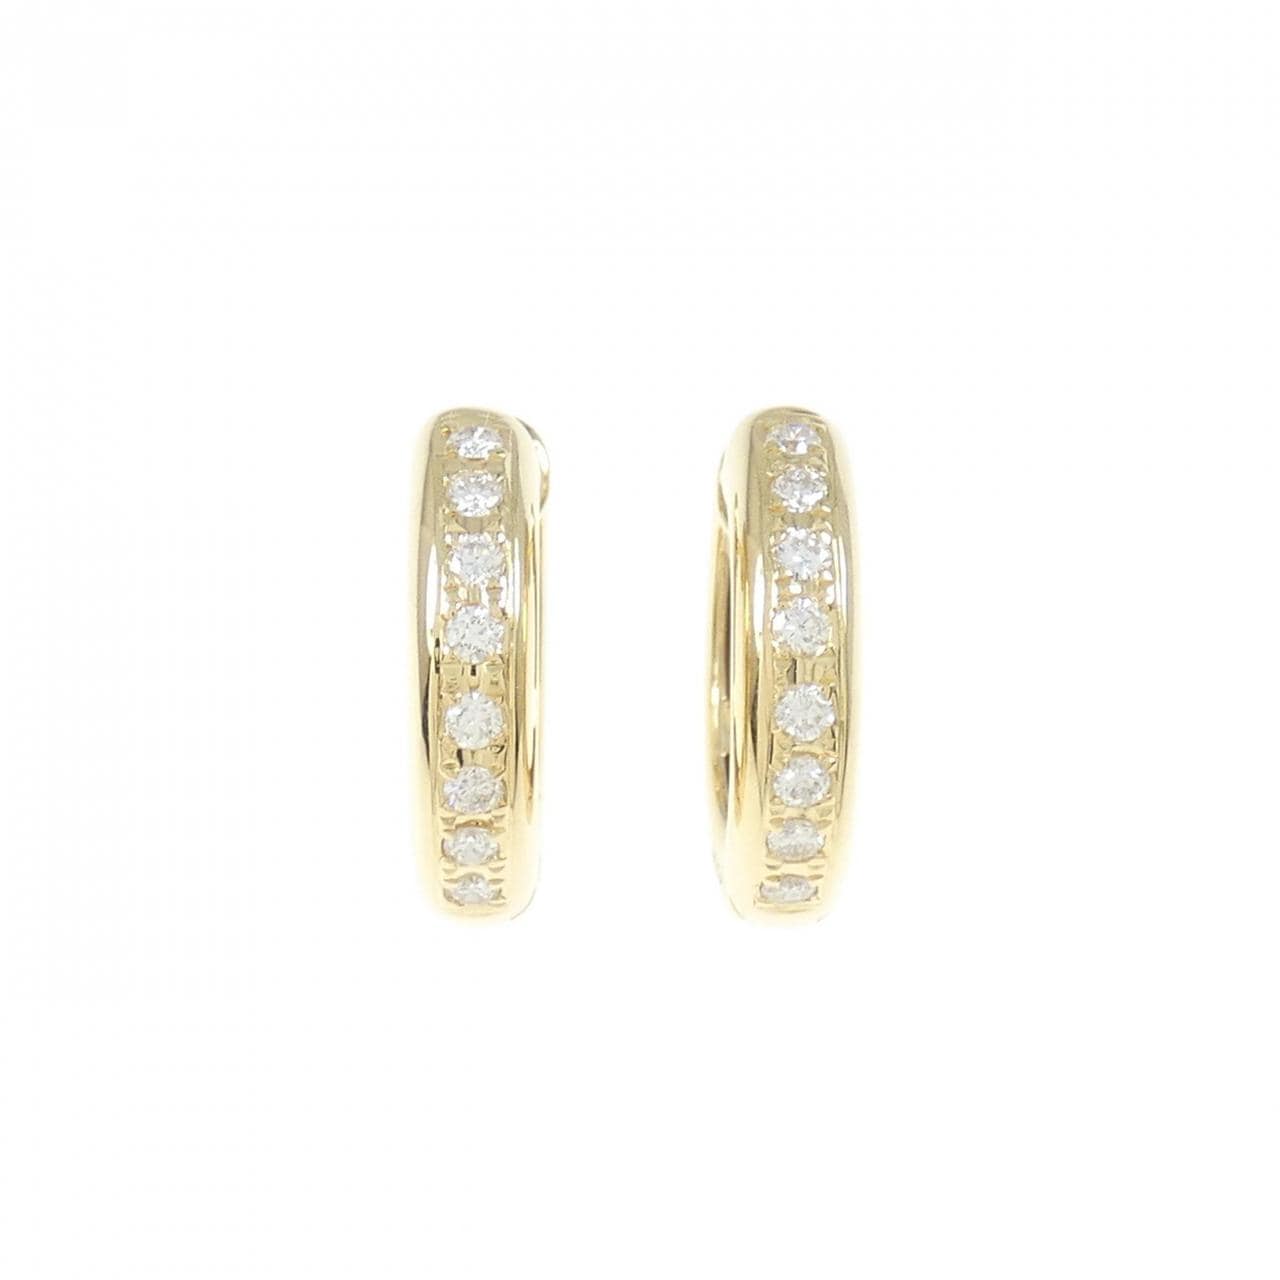 K18YG Diamond earrings 0.48CT